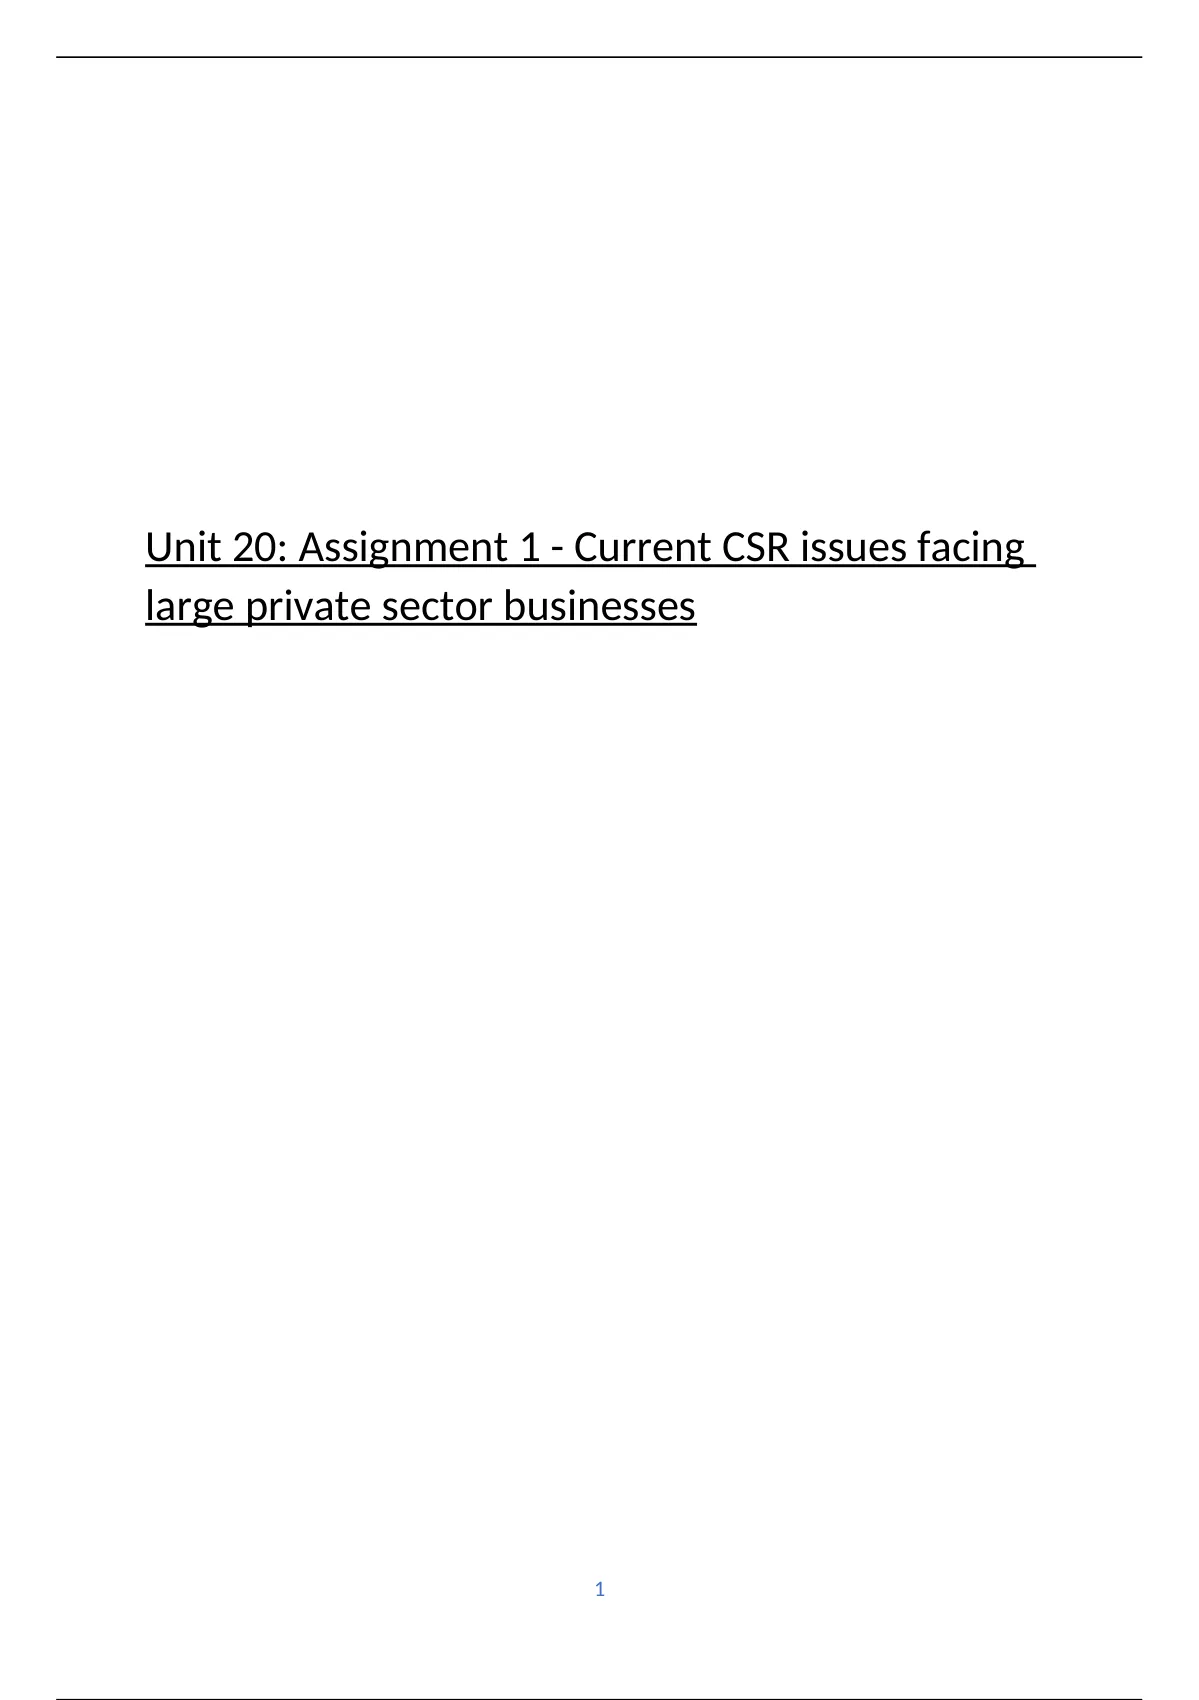 unit 20 csr assignment 1